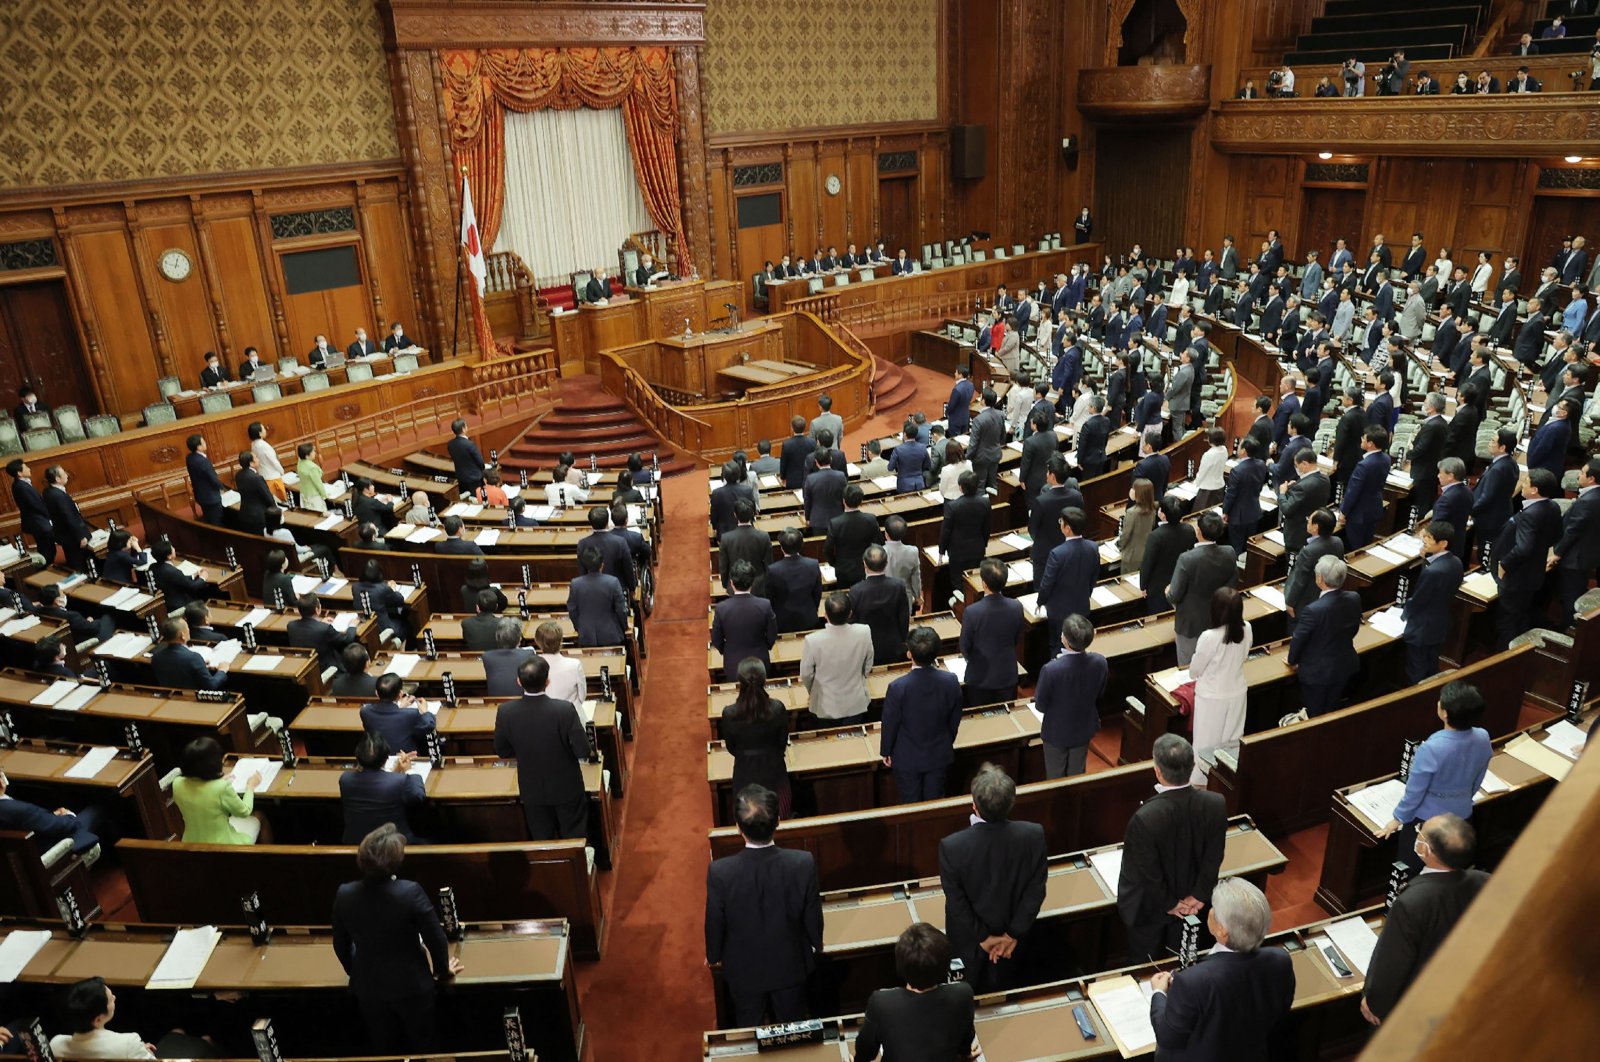 Jepang merombak undang-undang untuk memudahkan deportasi pencari suaka yang gagal